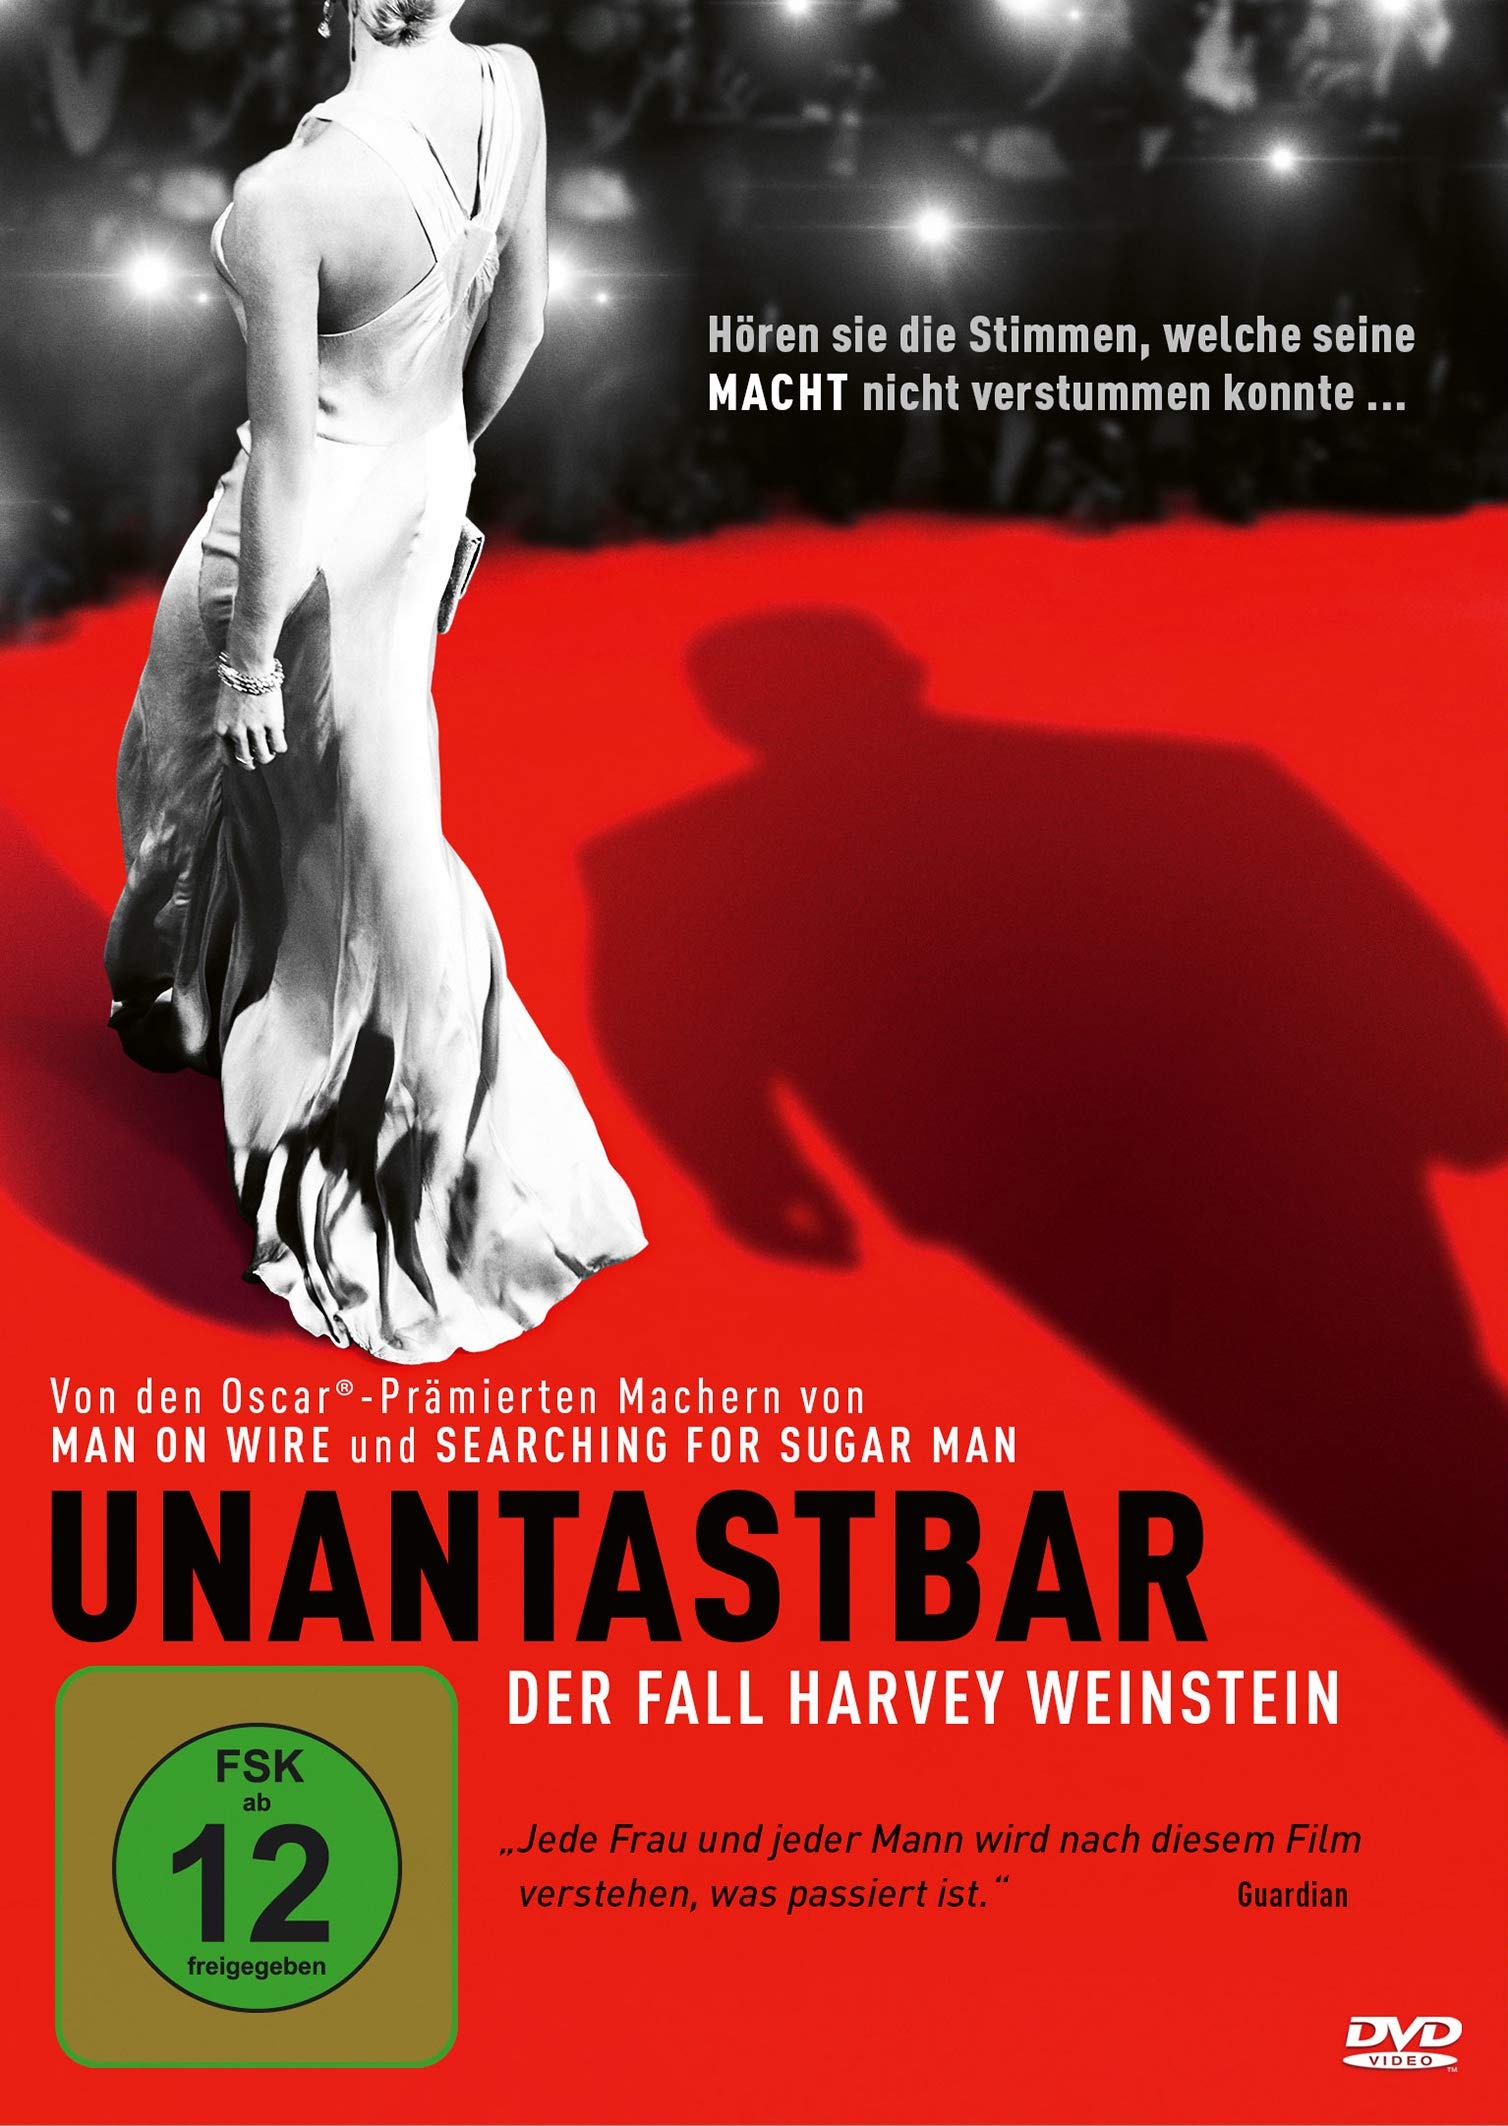 Unantastbar - Der Fall Harvey Weinstein (Neu differenzbesteuert)